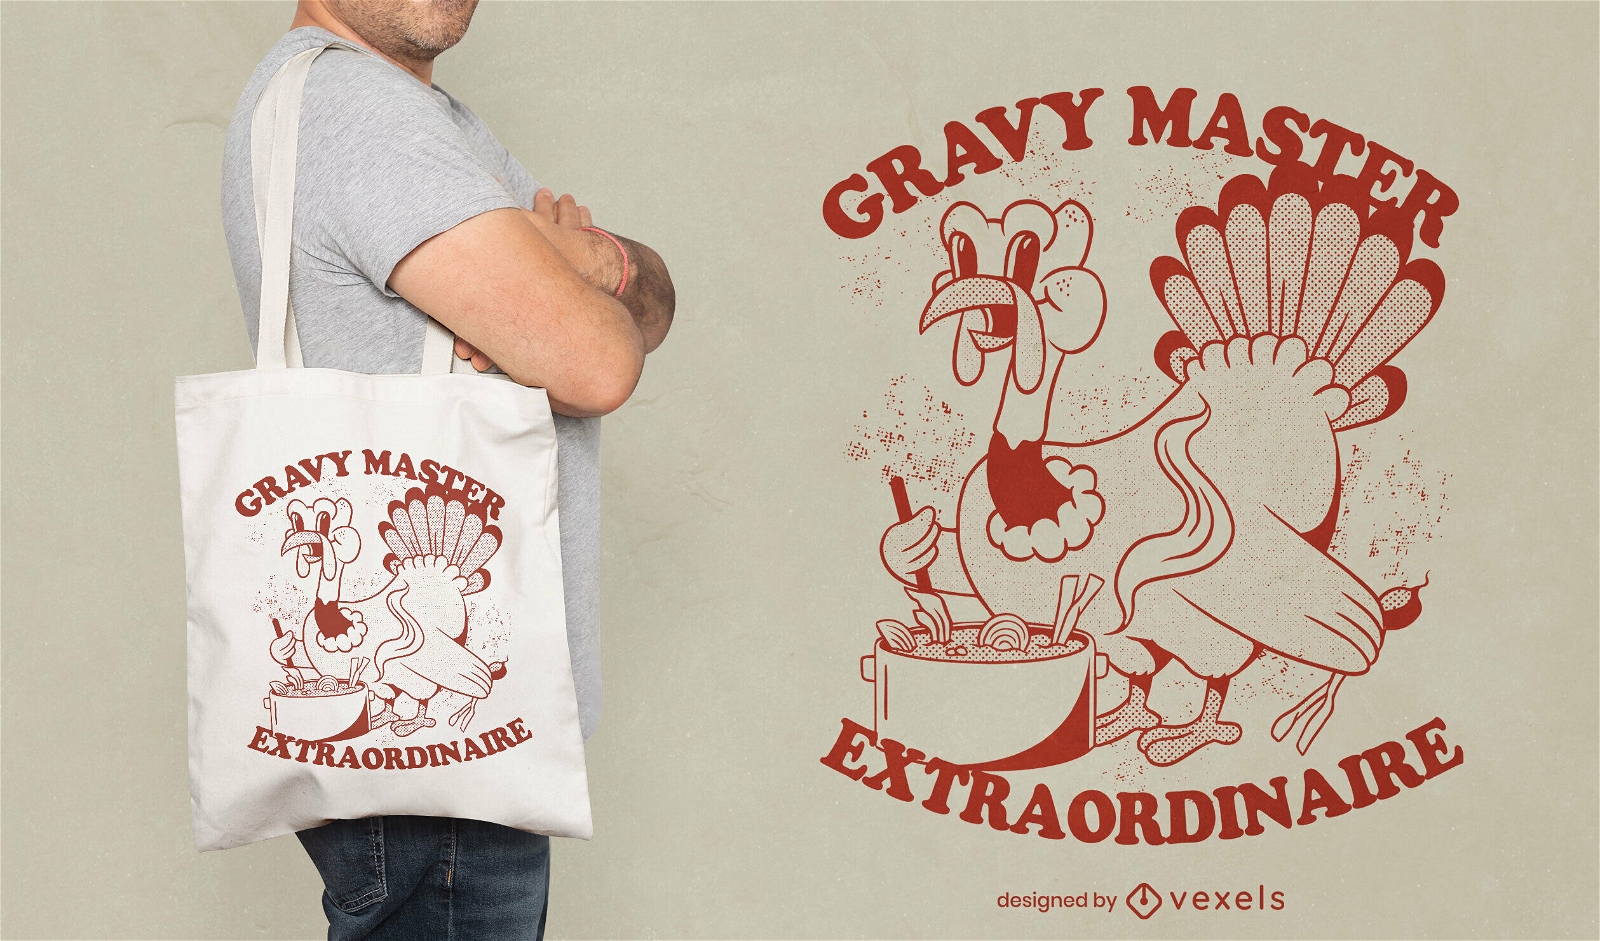 Gravy Master Truthahn-Einkaufstaschen-Design